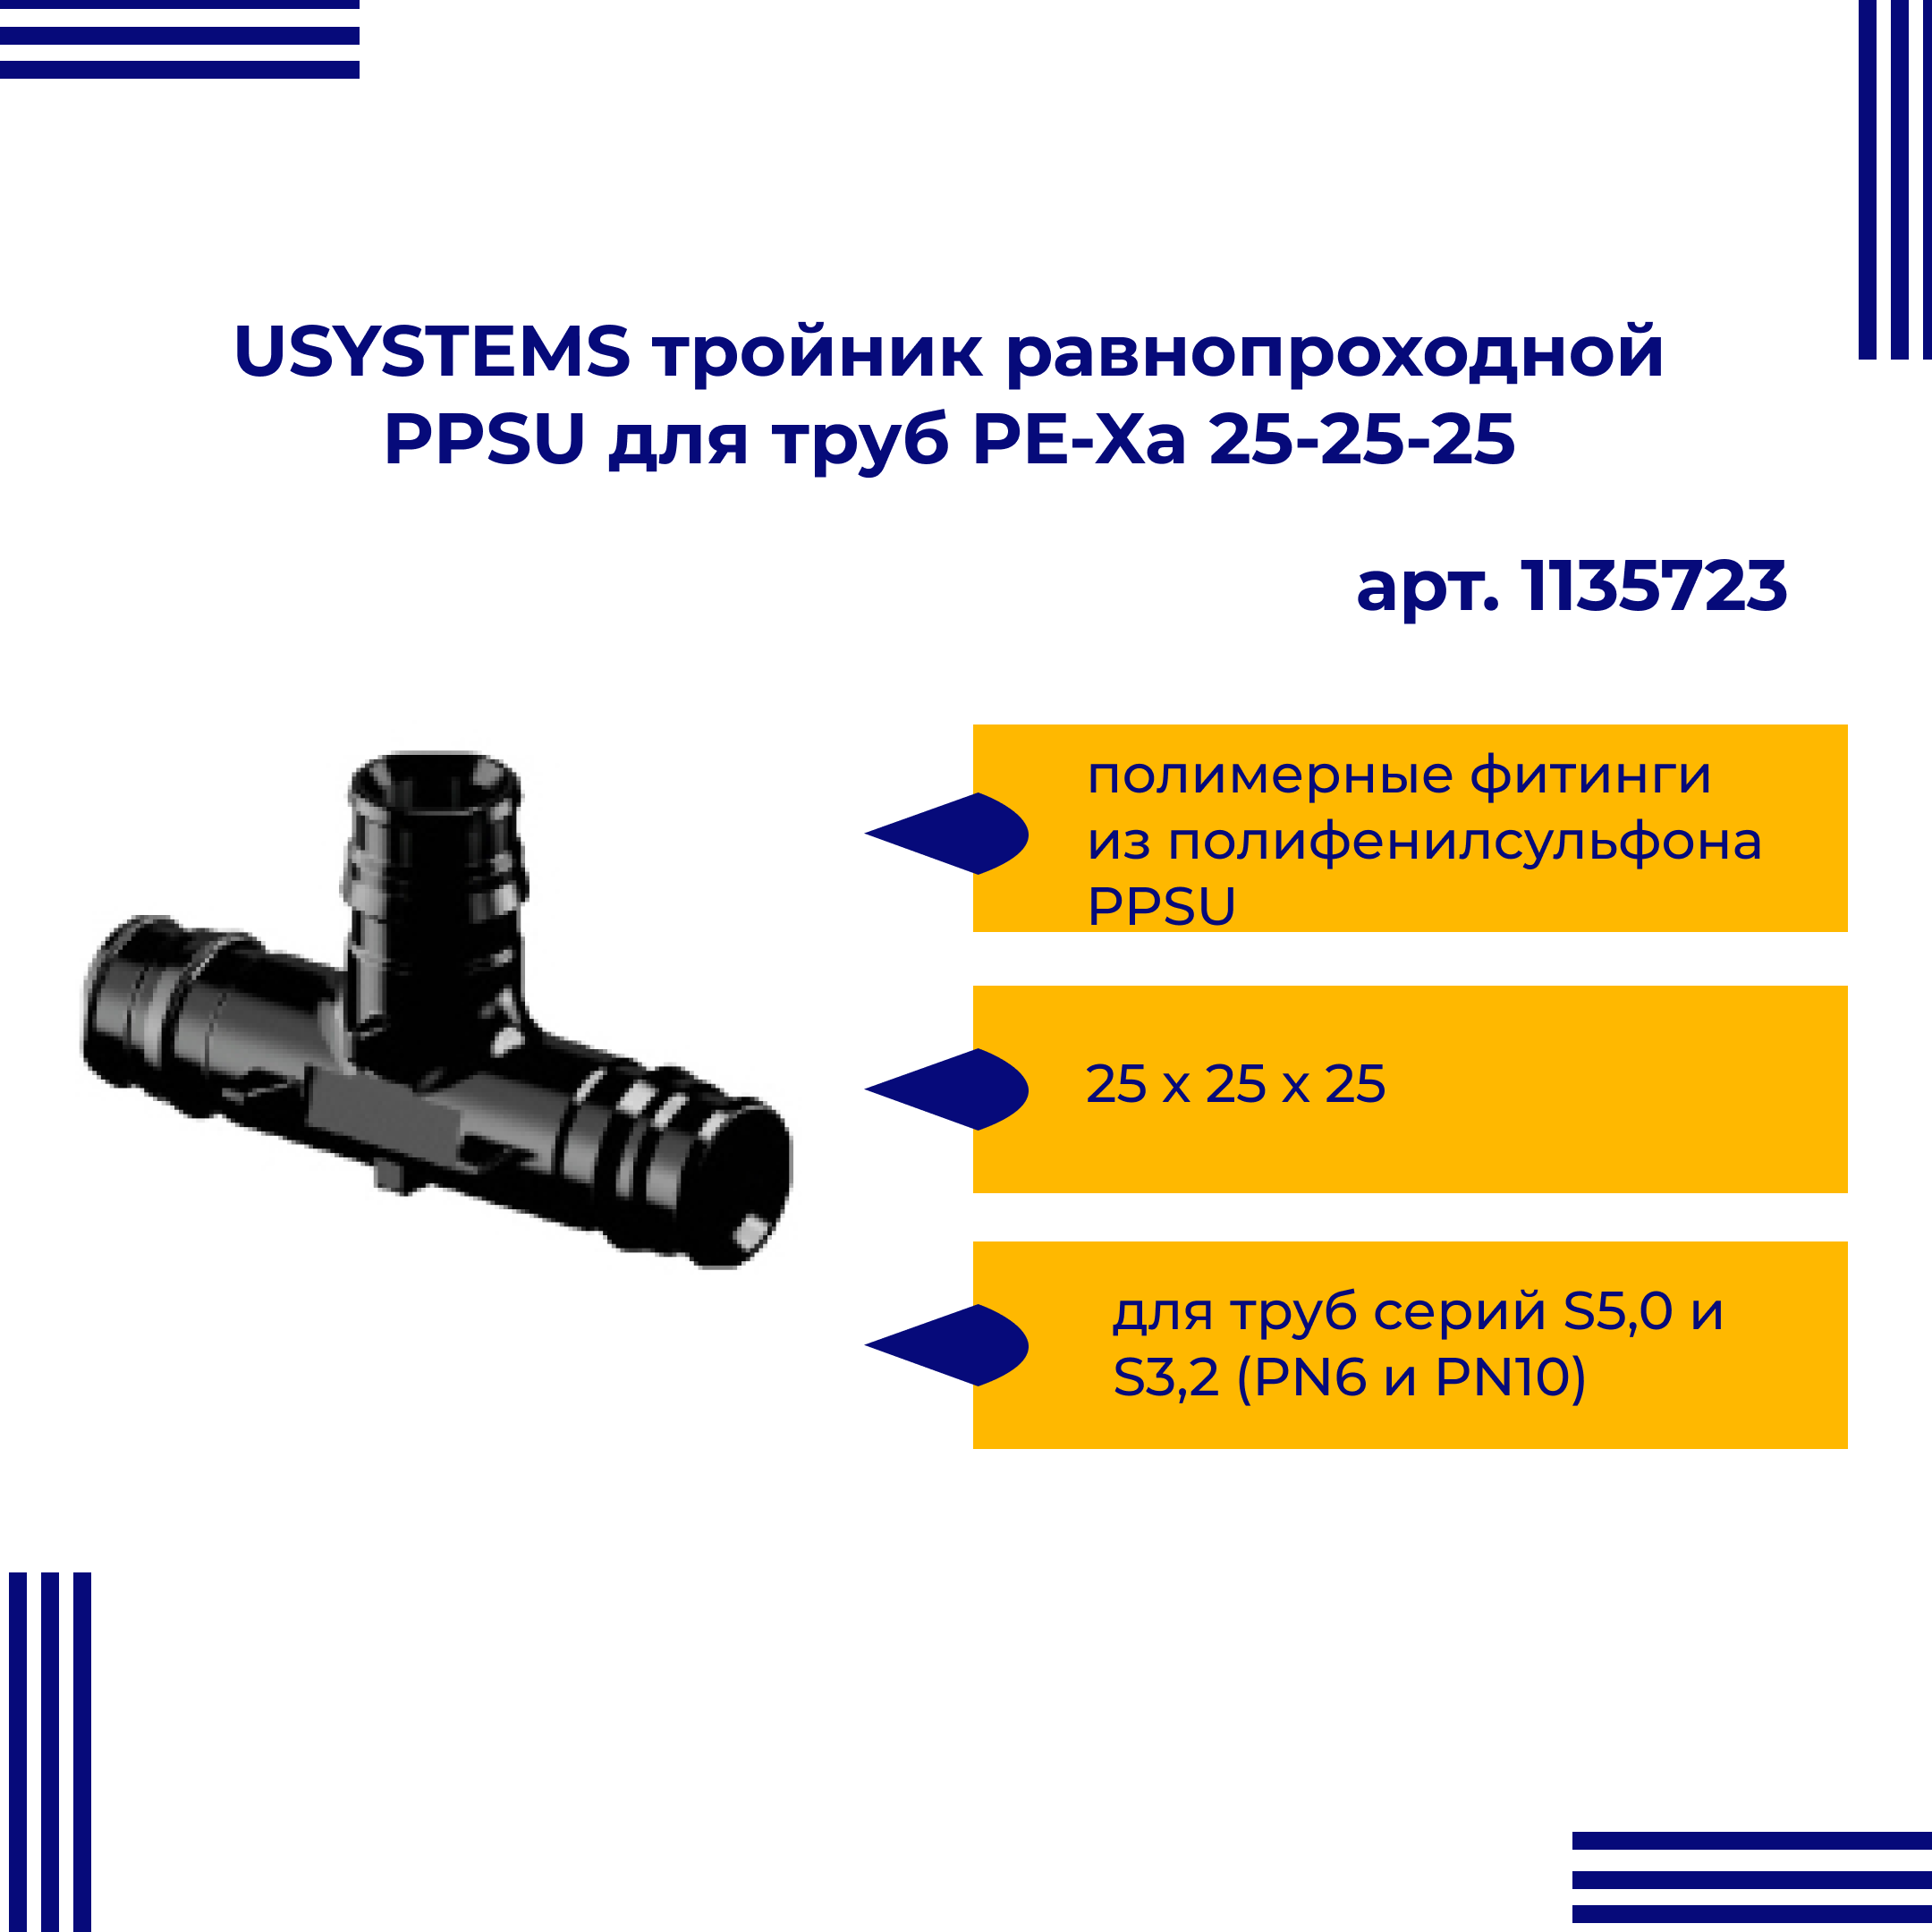 Тройник PPSU USYSTEMS 1135723 равнопроходной для труб PE-Xa 25-25-25 равнопроходной тройник viega